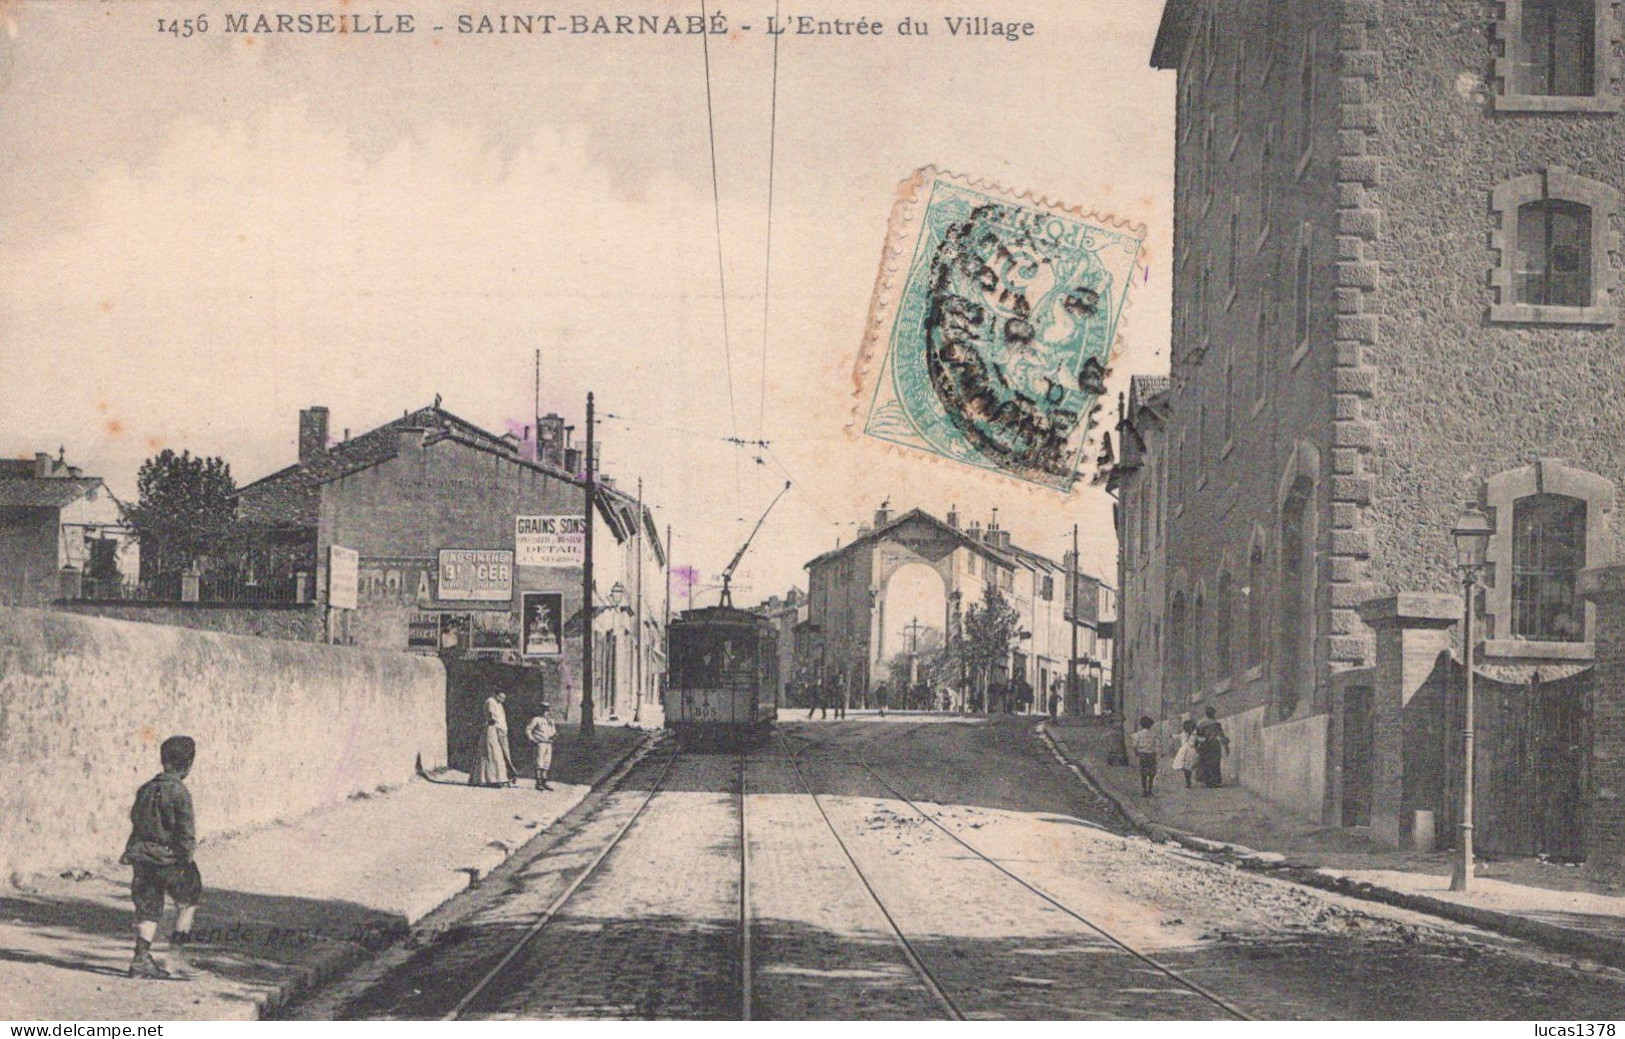 13 / MARSEILLE / SAINT BARNABE / L ENTREE DU VILLAGE / GUENDE 1456 / RARE ET SUPERBE CARTE - Saint Barnabé, Saint Julien, Montolivet